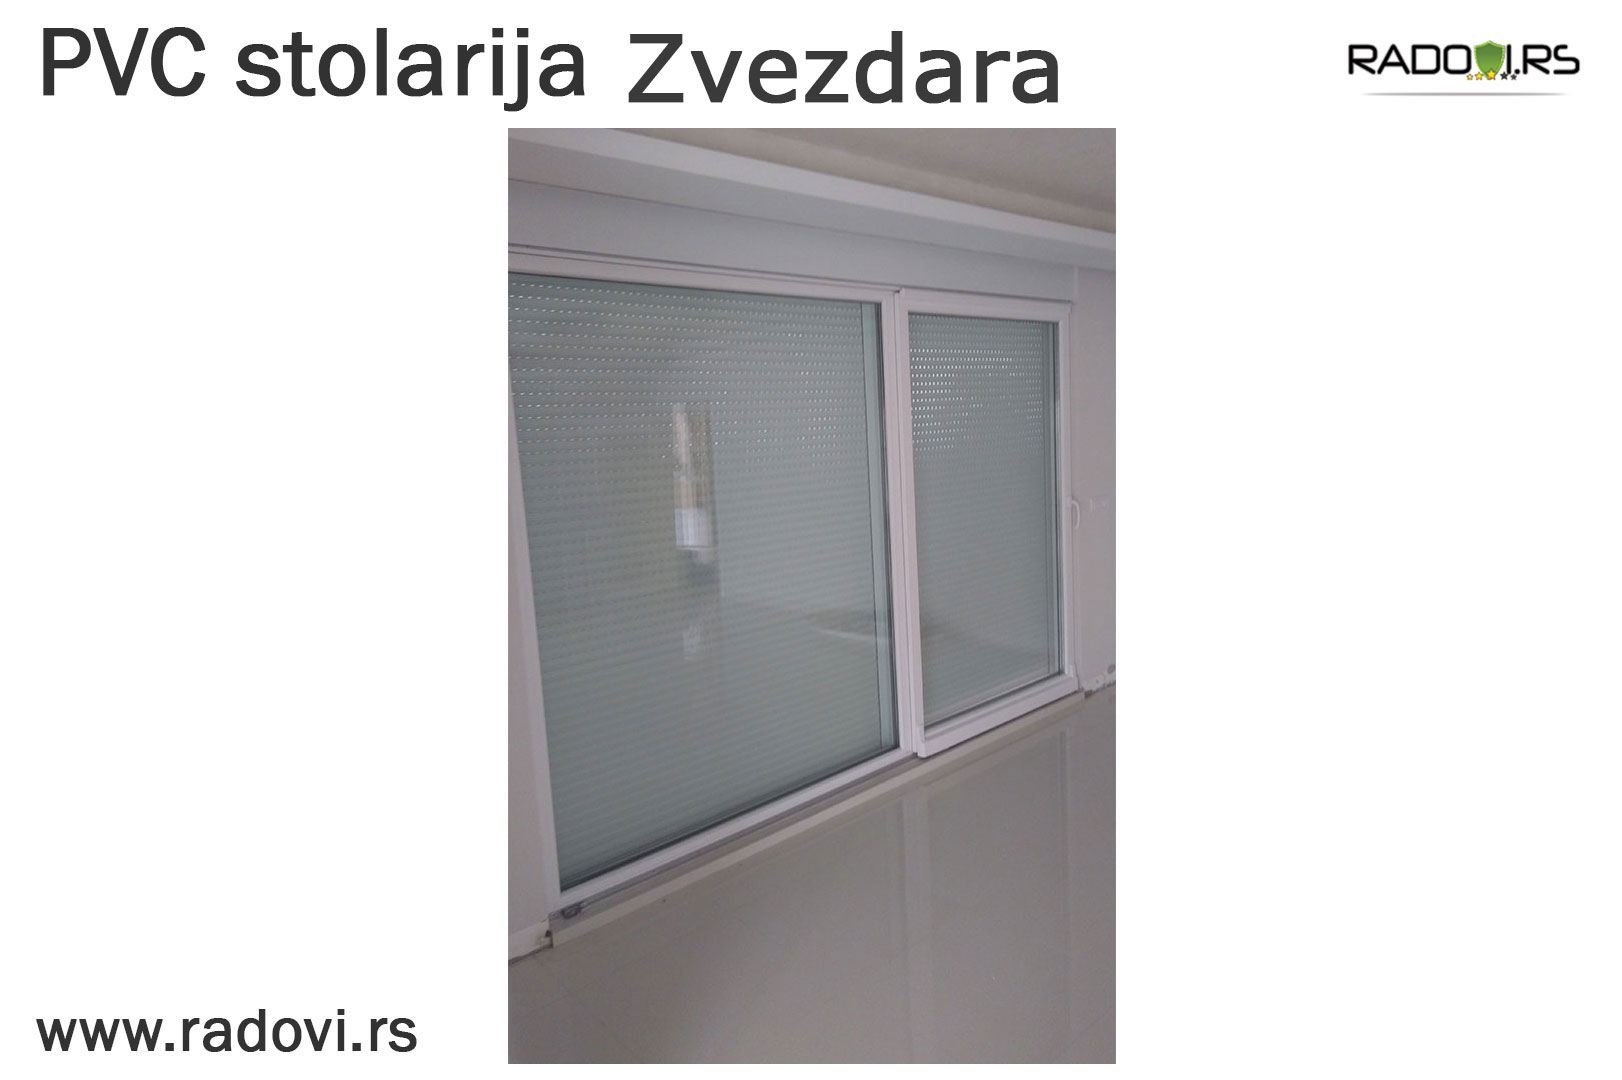 PVC stolarije Zvezdara - PVC stolarija - Radovi.rs